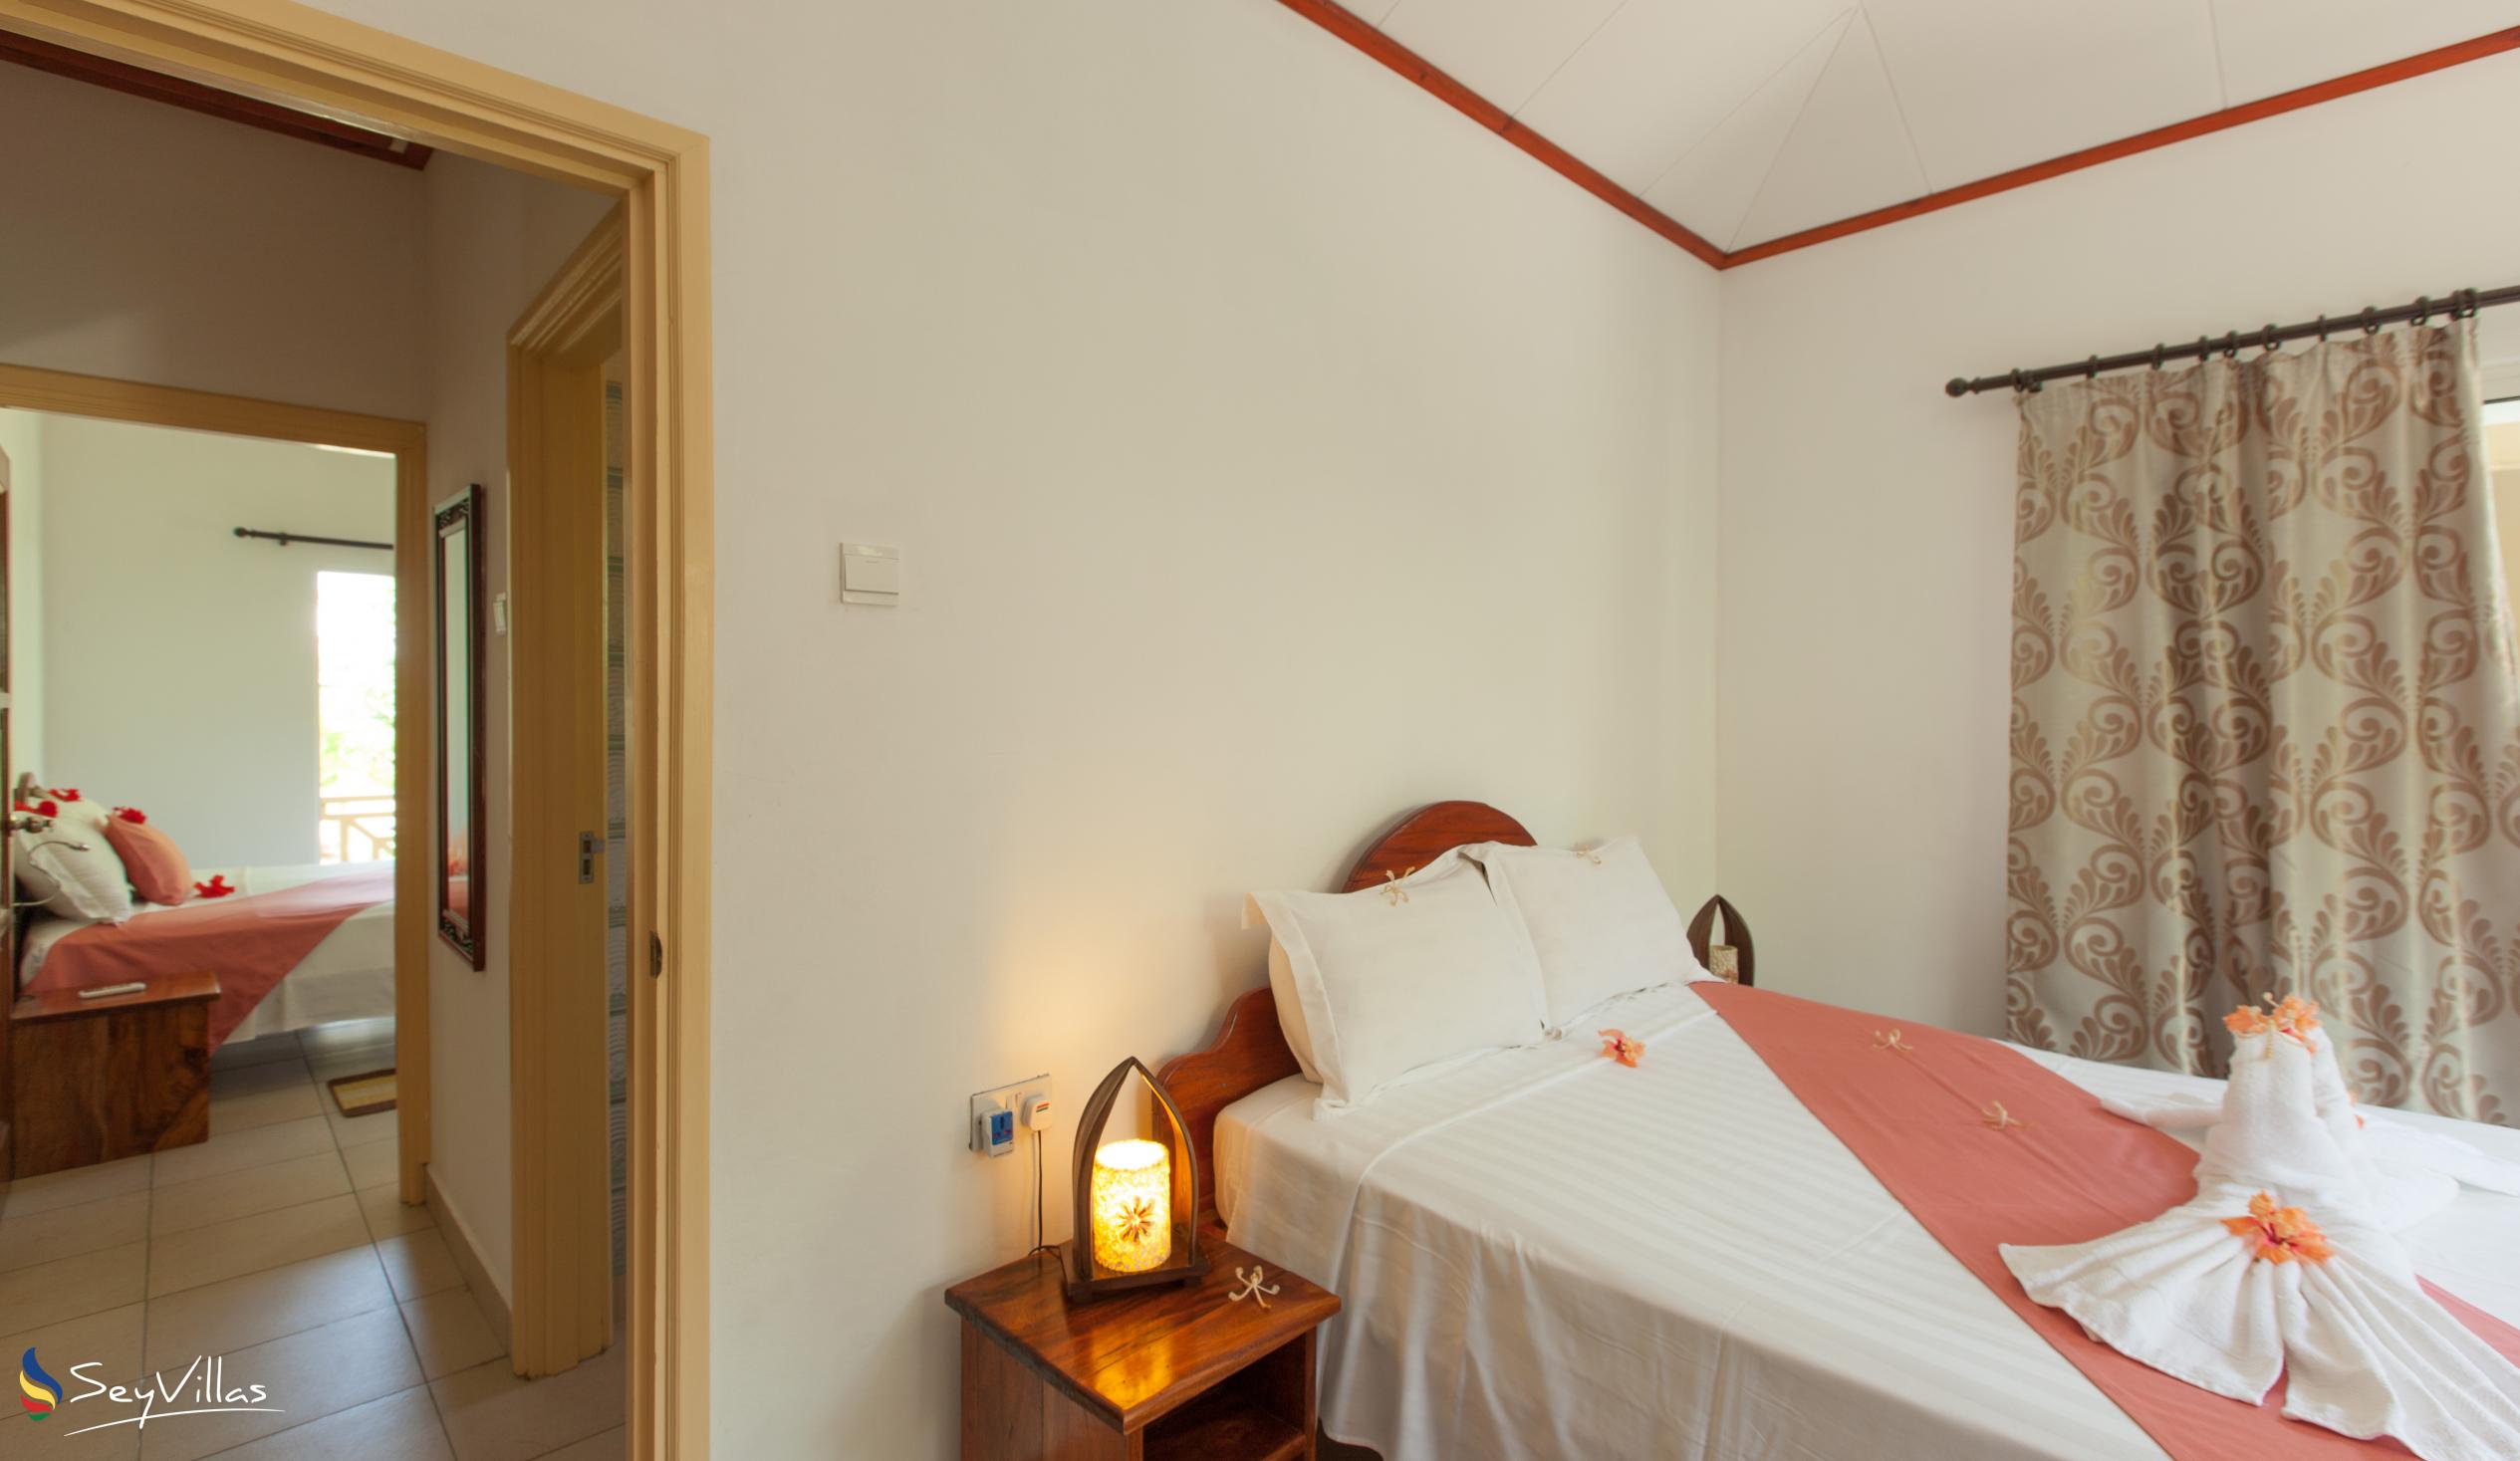 Foto 23: Hostellerie La Digue - Chalet 3 chambres - La Digue (Seychelles)